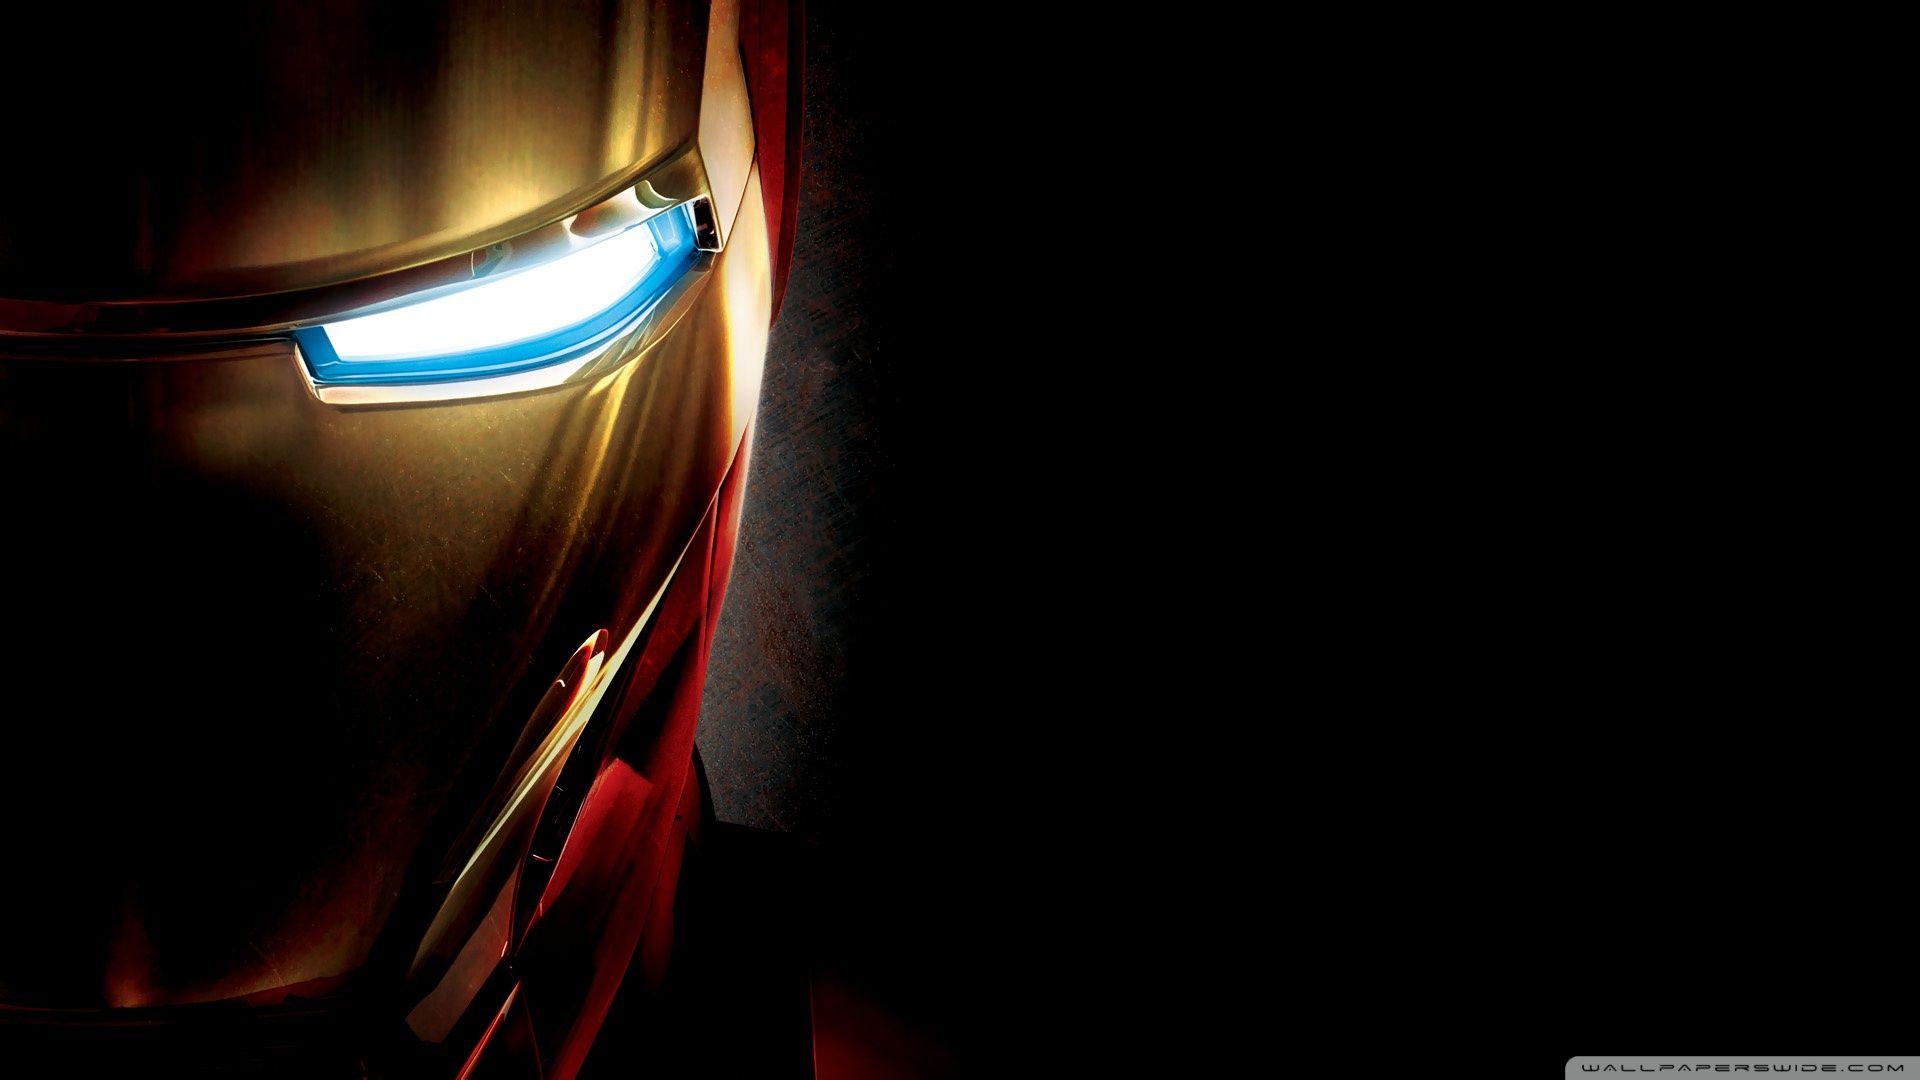 Iron Man Eye ❤ 4K HD Desktop Wallpaper for 4K Ultra HD TV • Wide